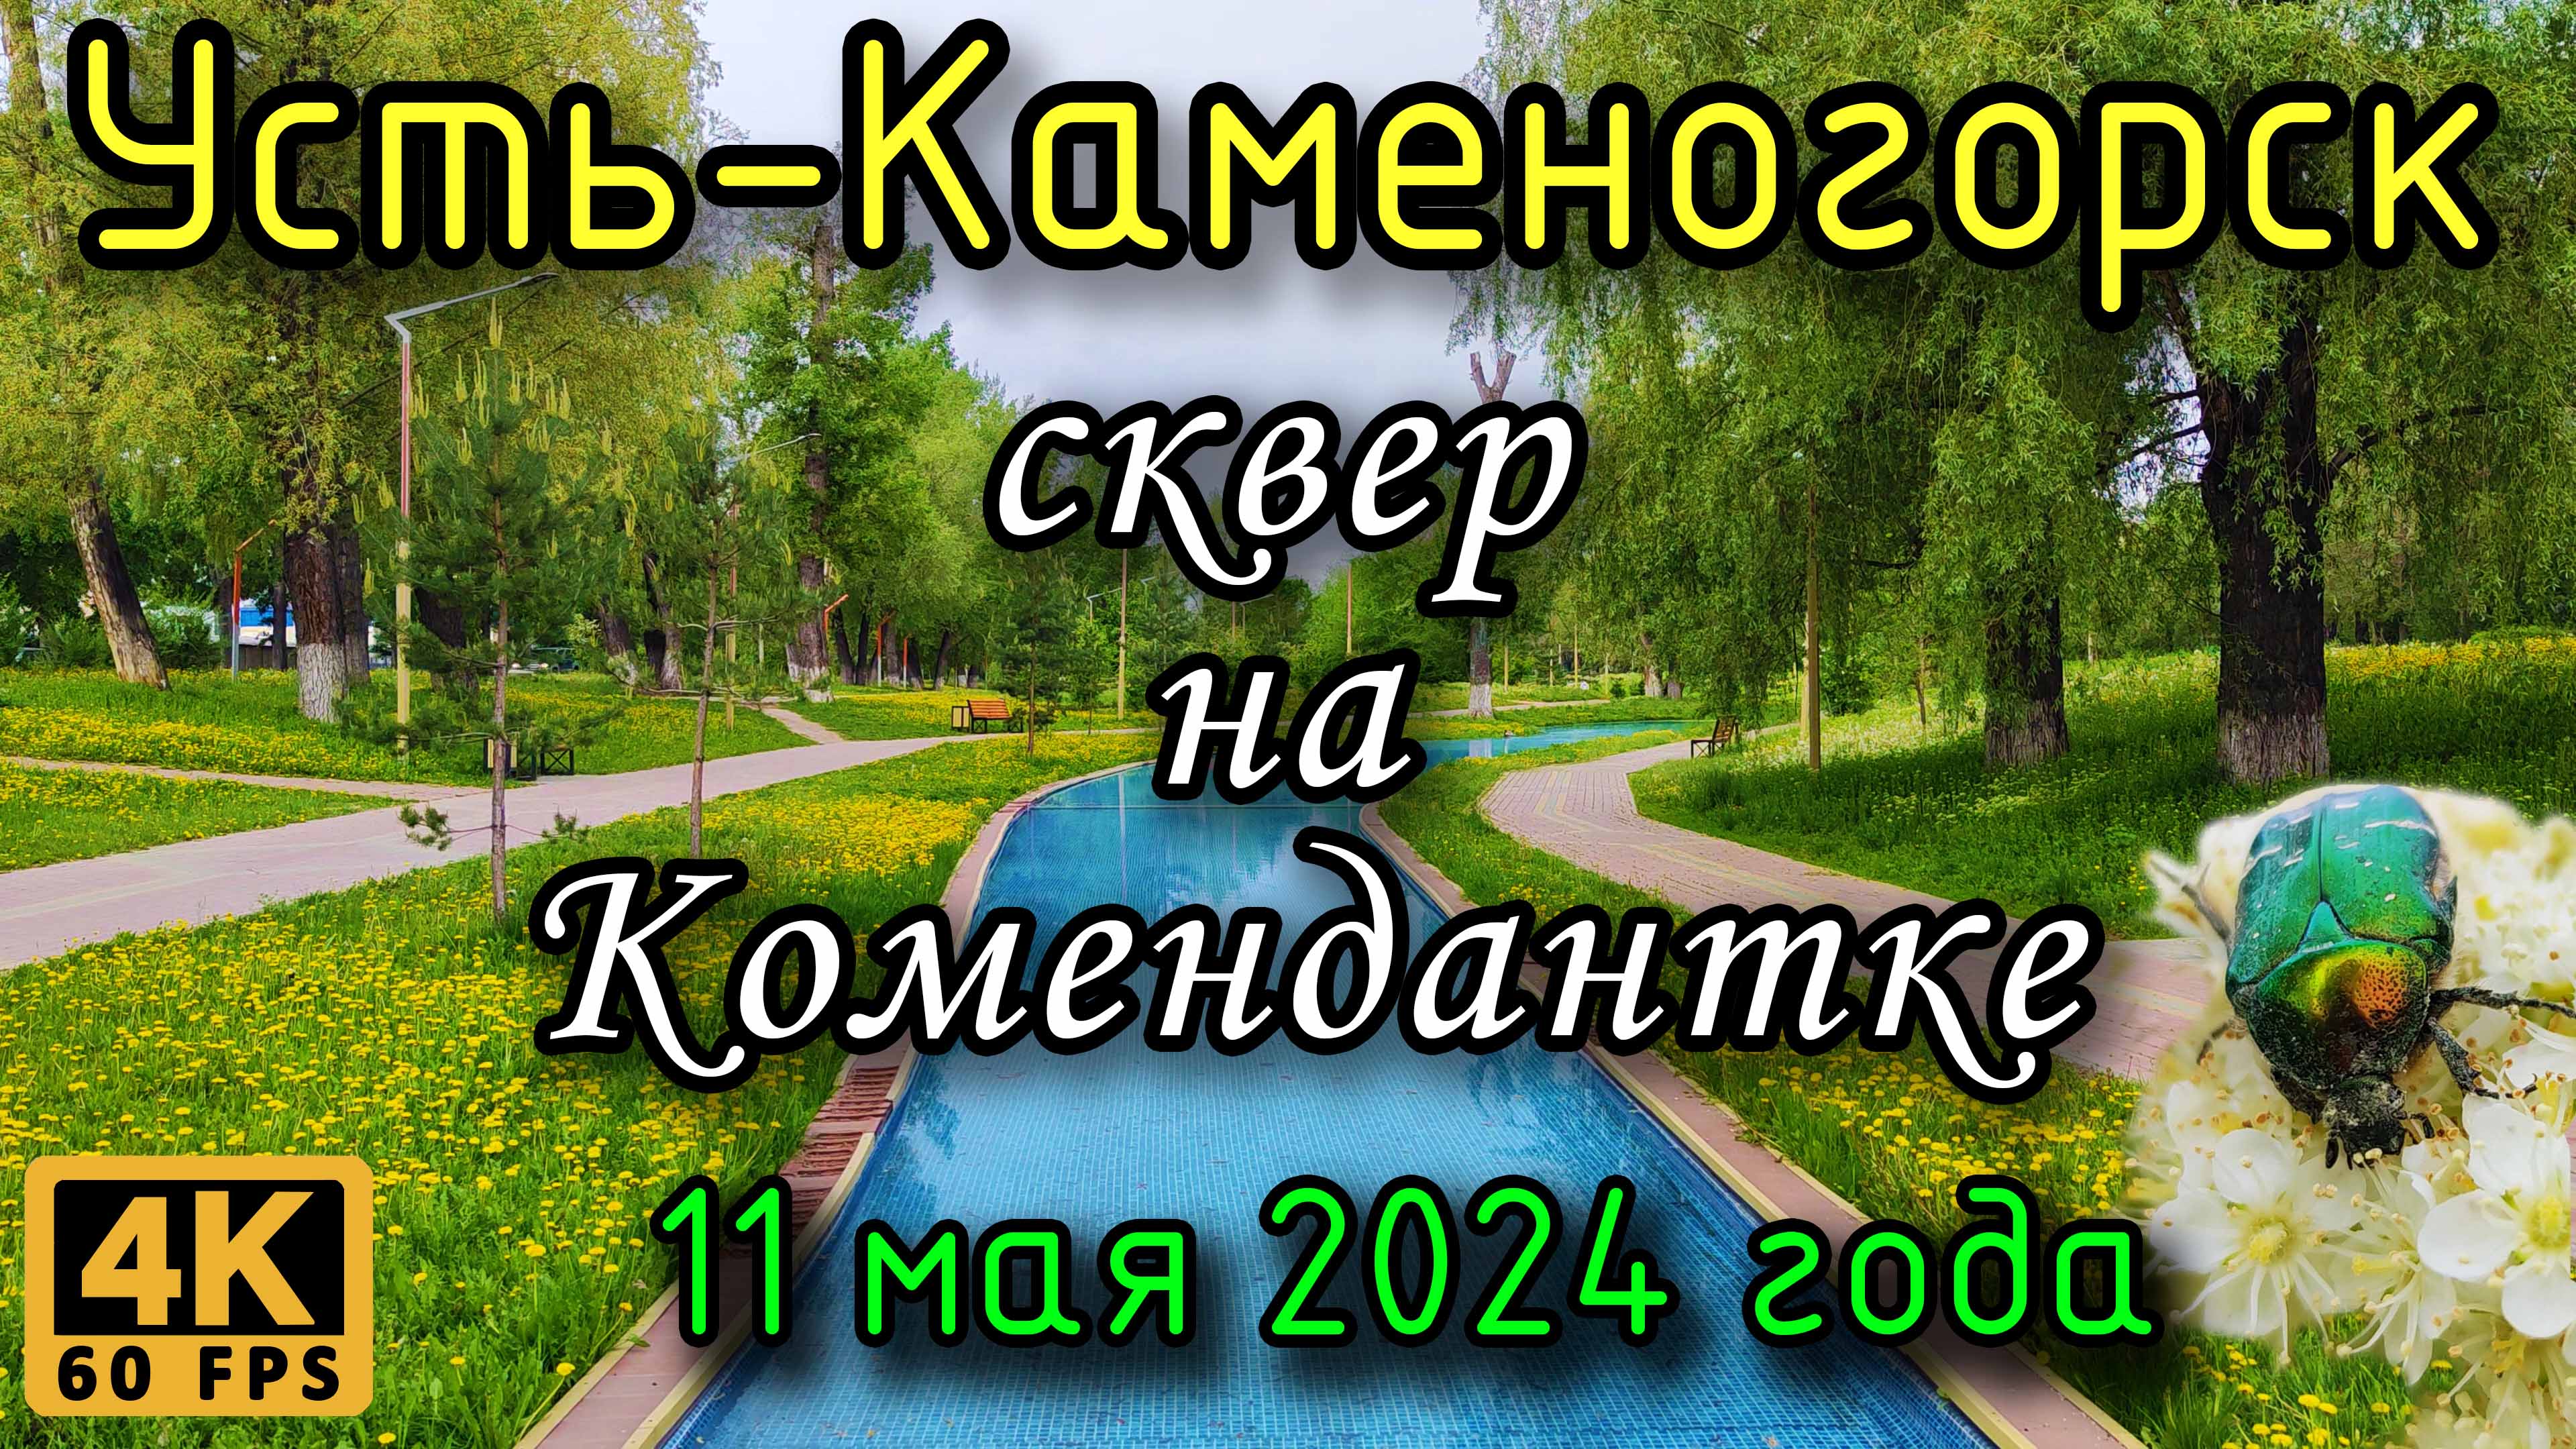 Усть-Каменогорск: сквер на Комендантке в 4К. 11 мая 2024 года.